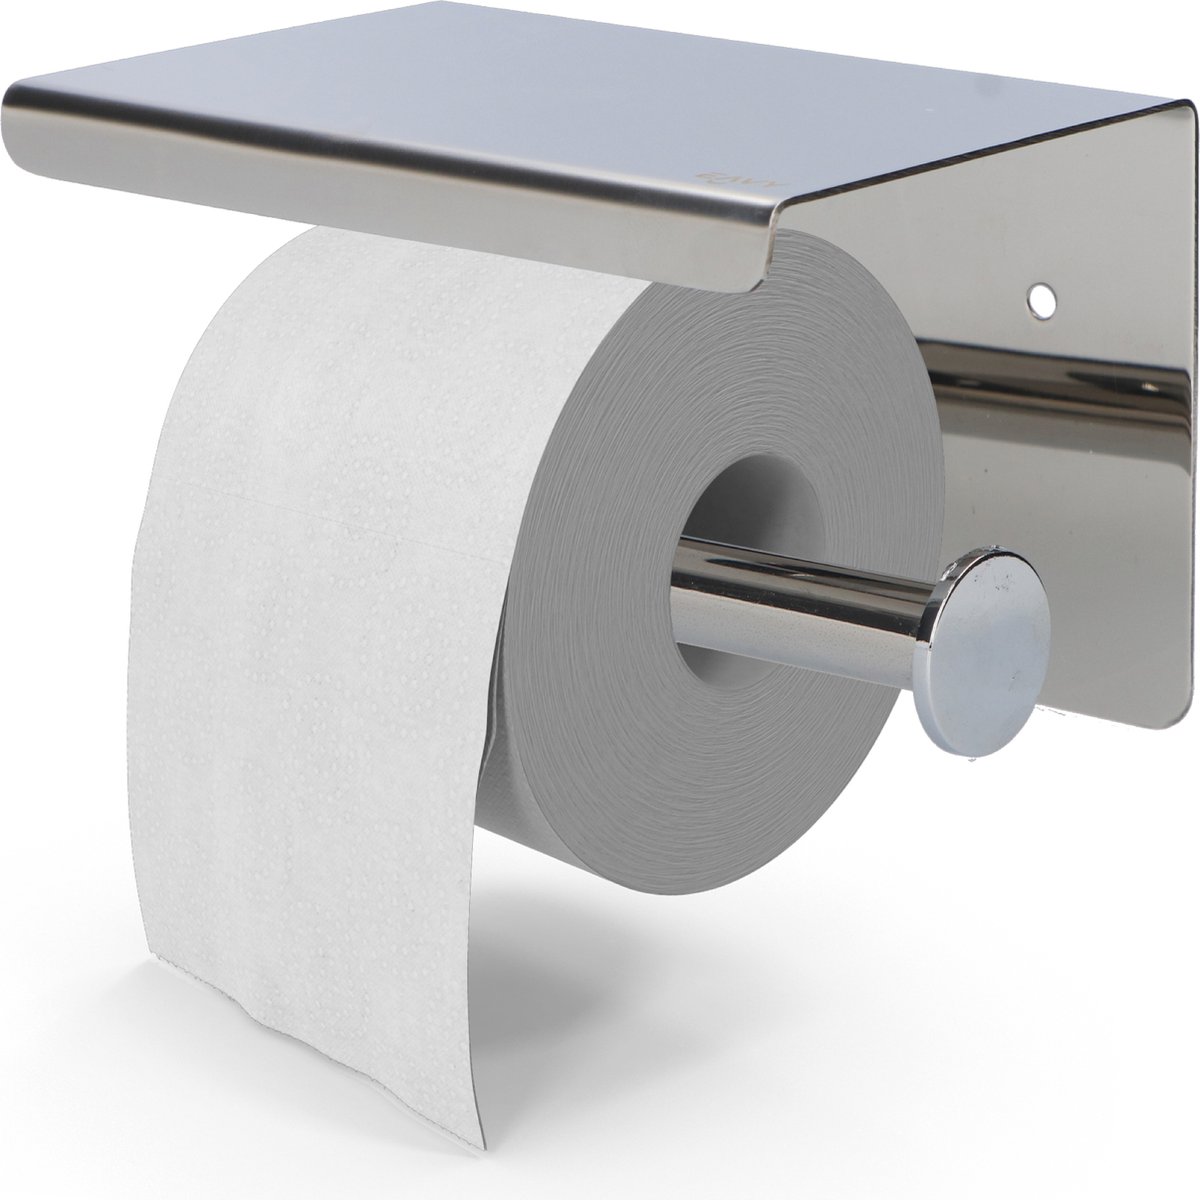 Papier toilette pas cher, rouleau de papier hygiénique pour commerce